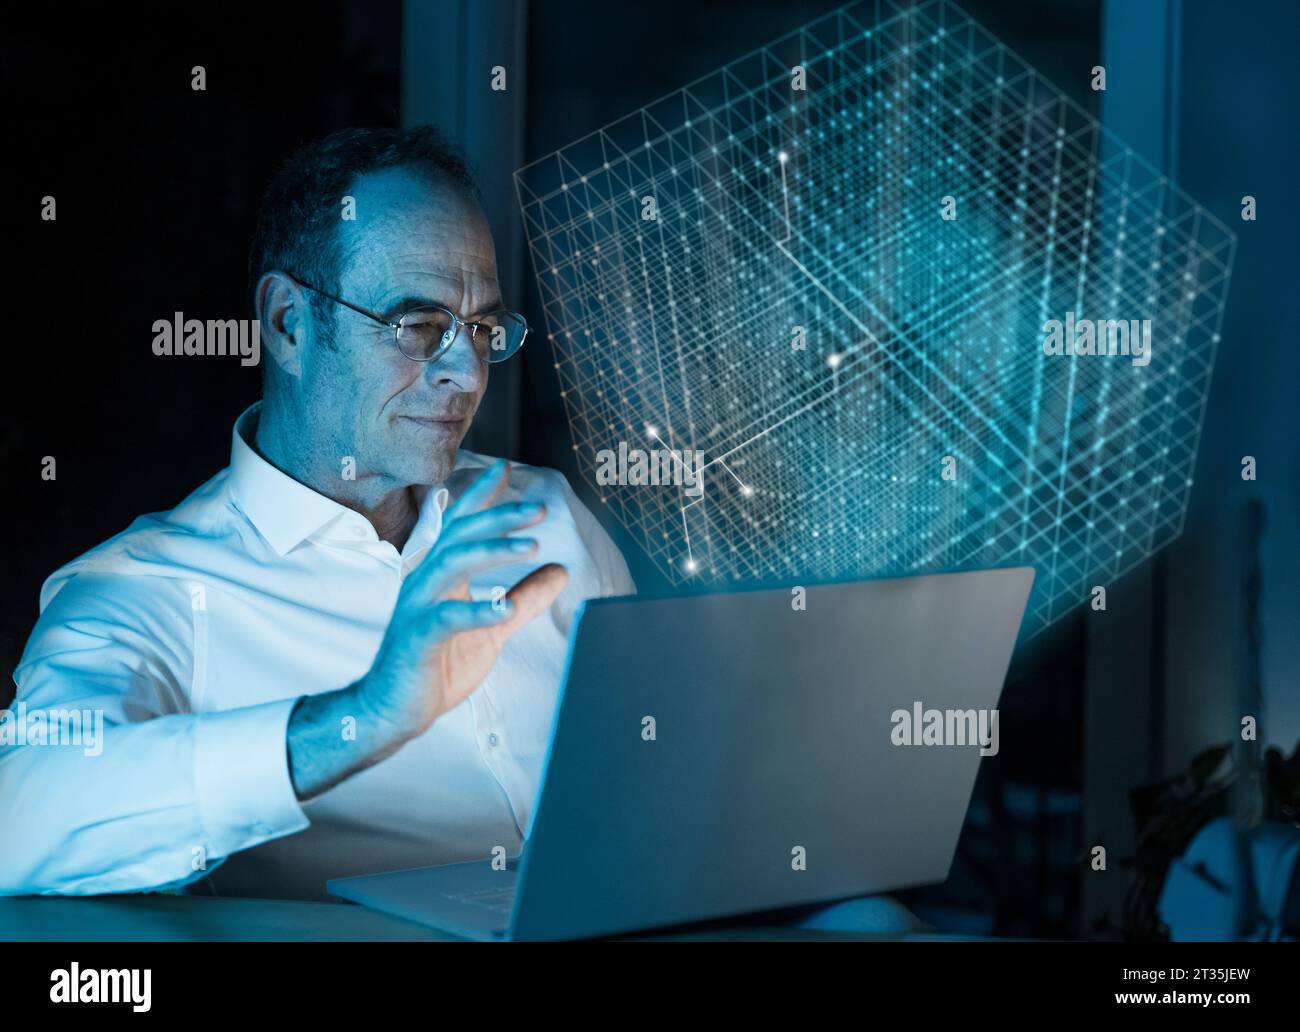 Immagine composita digitale di un uomo d'affari che utilizza un computer portatile con cubo 3D in ufficio Foto Stock